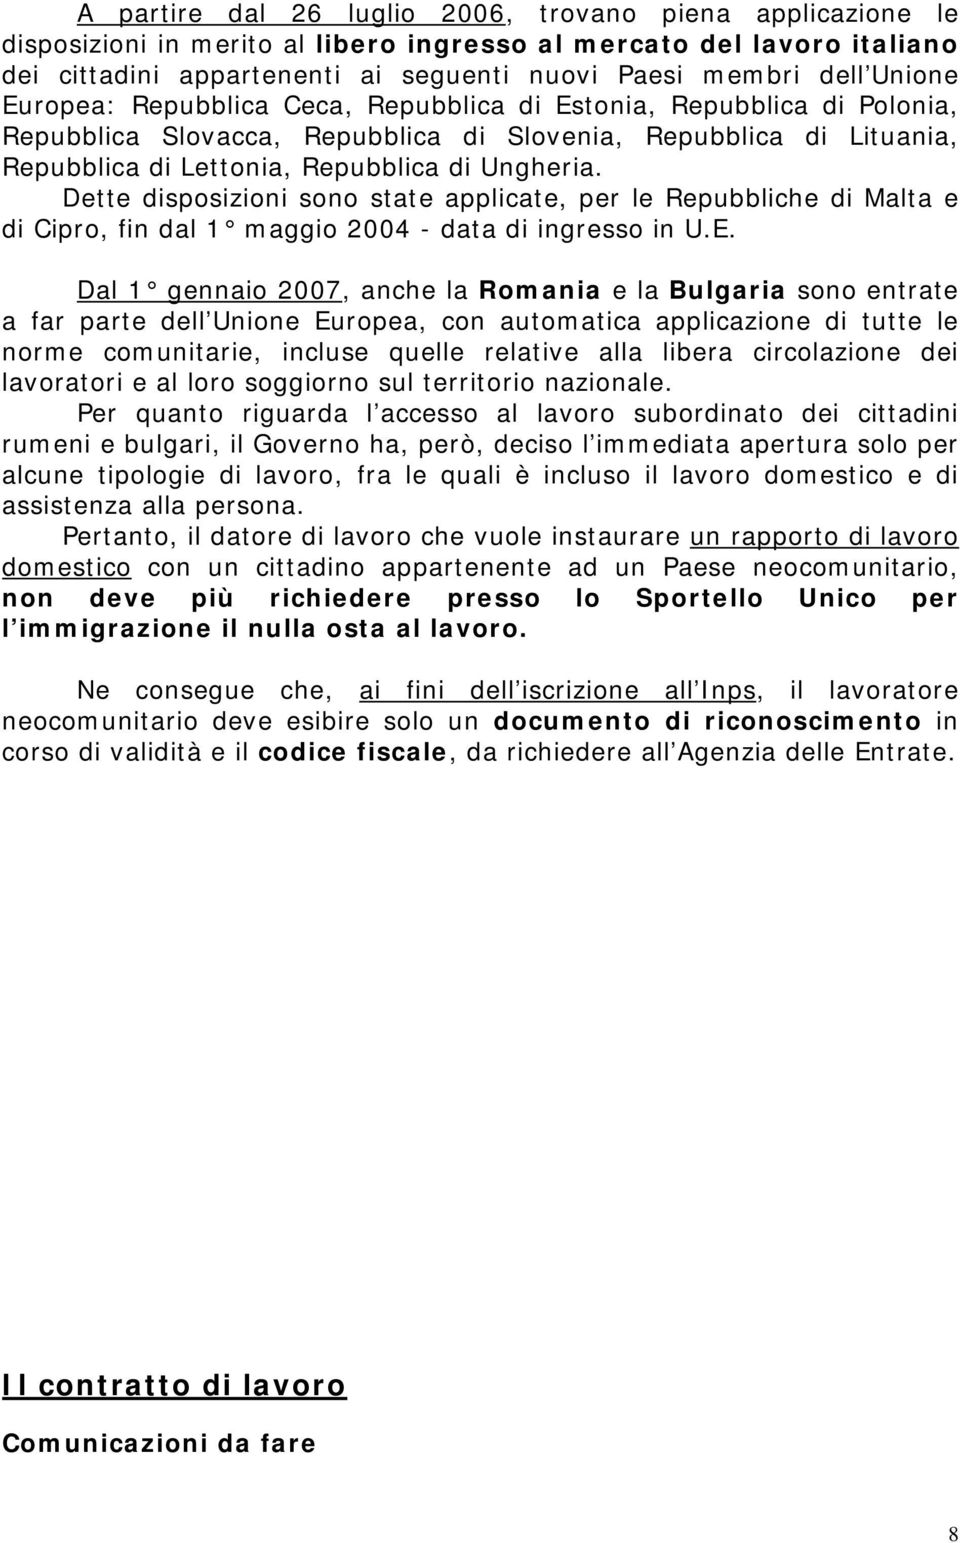 Dette disposizioni sono state applicate, per le Repubbliche di Malta e di Cipro, fin dal 1 maggio 2004 - data di ingresso in U.E.